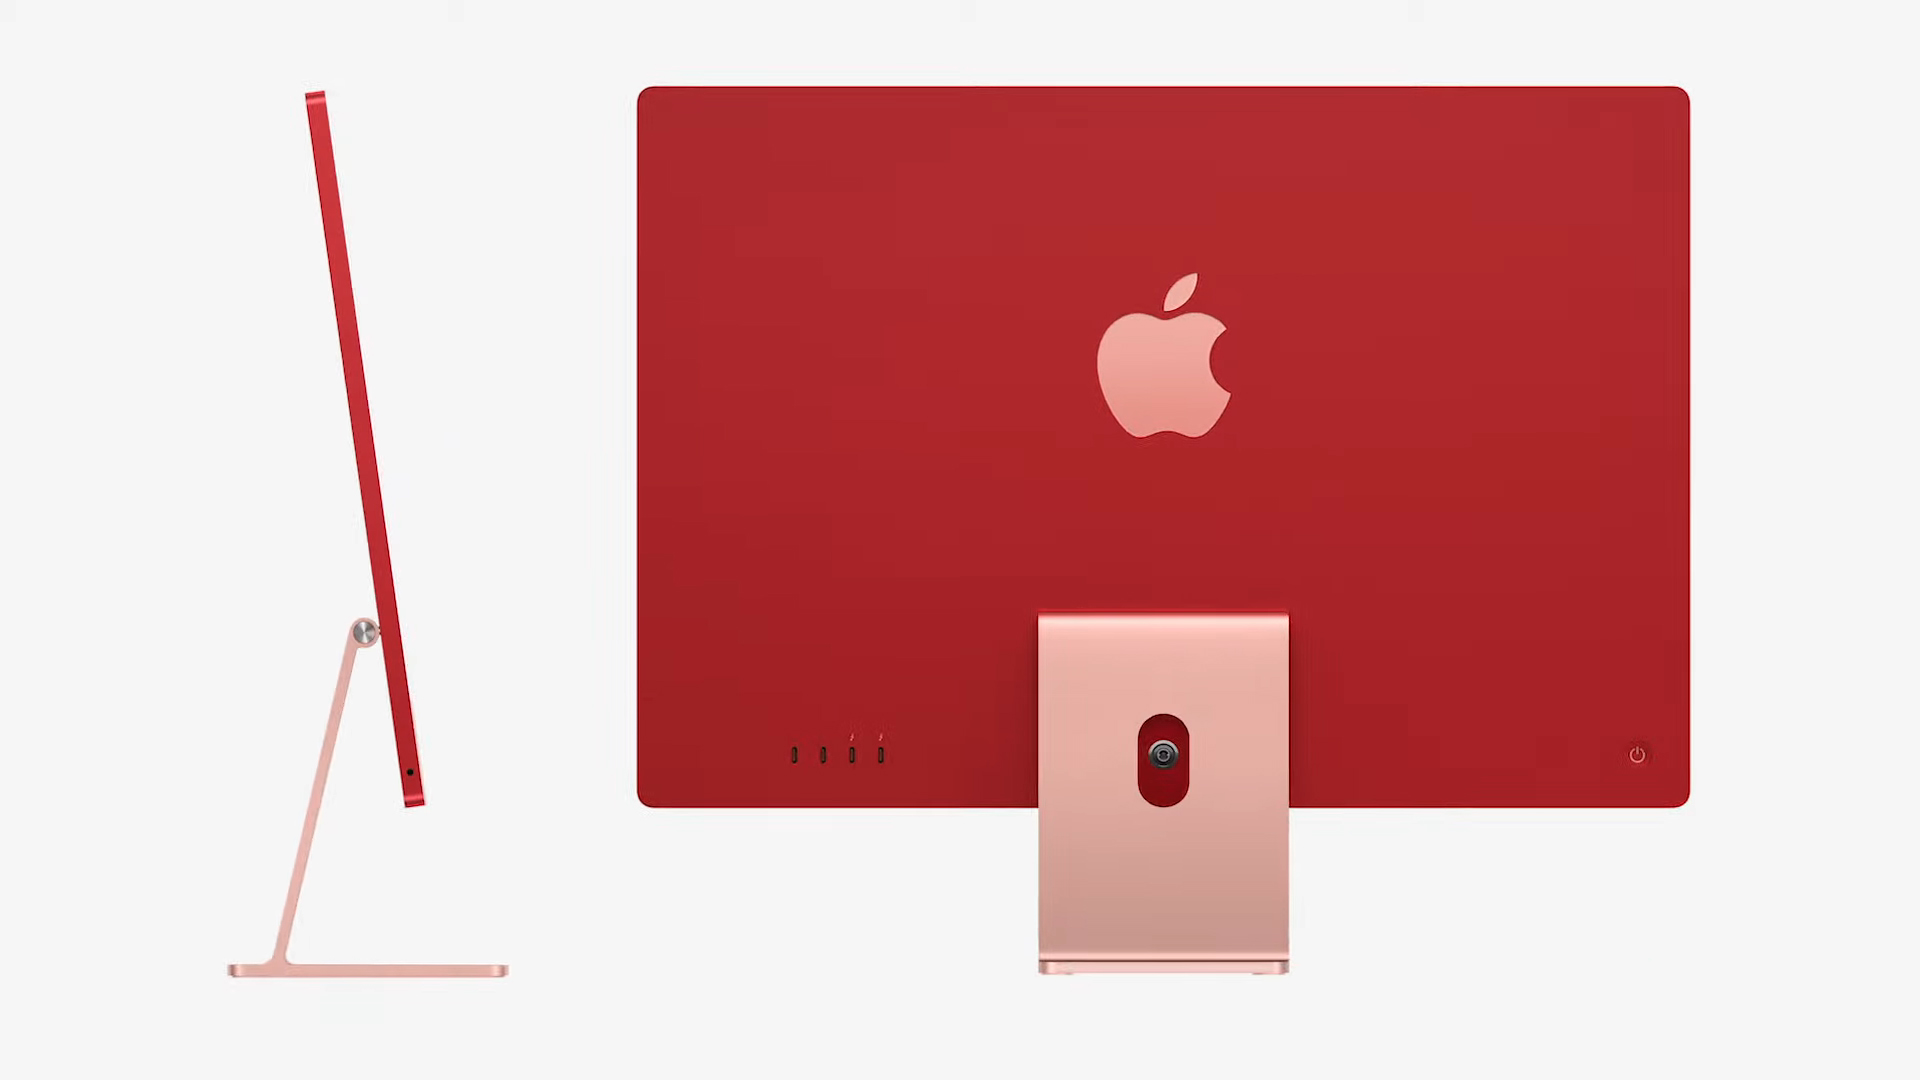 #AppleEvent – O Novo IMac: Cores, Redesign E Chip M1